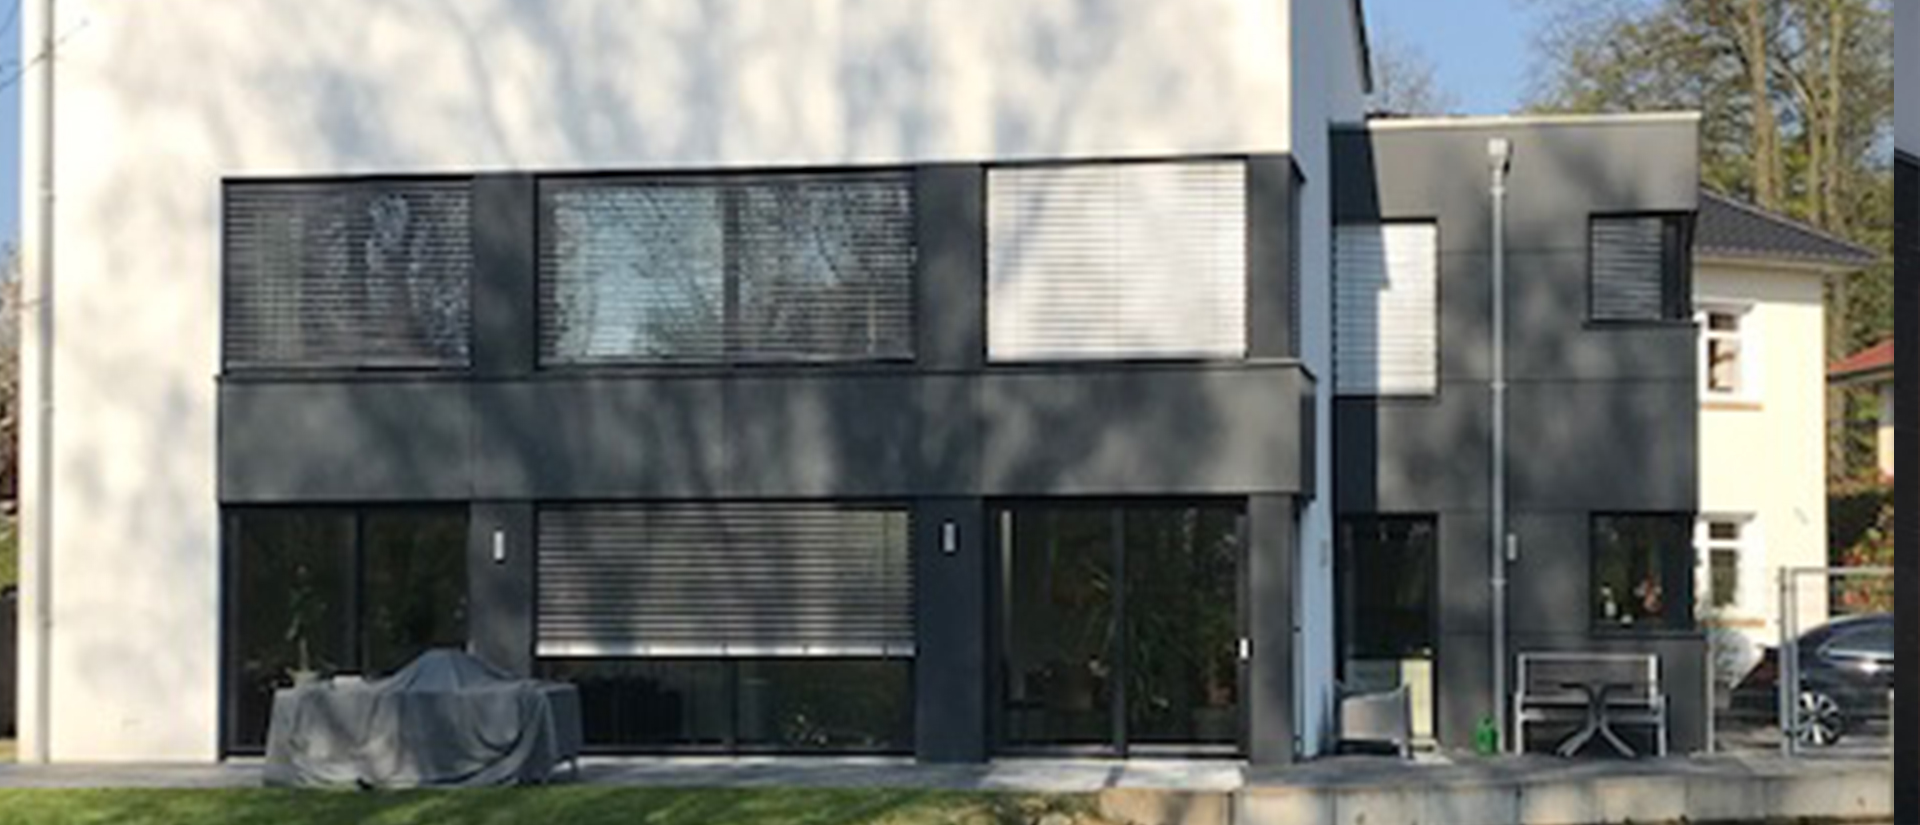 Herkenhoff Referenz, Fensterfront mit Rollläden